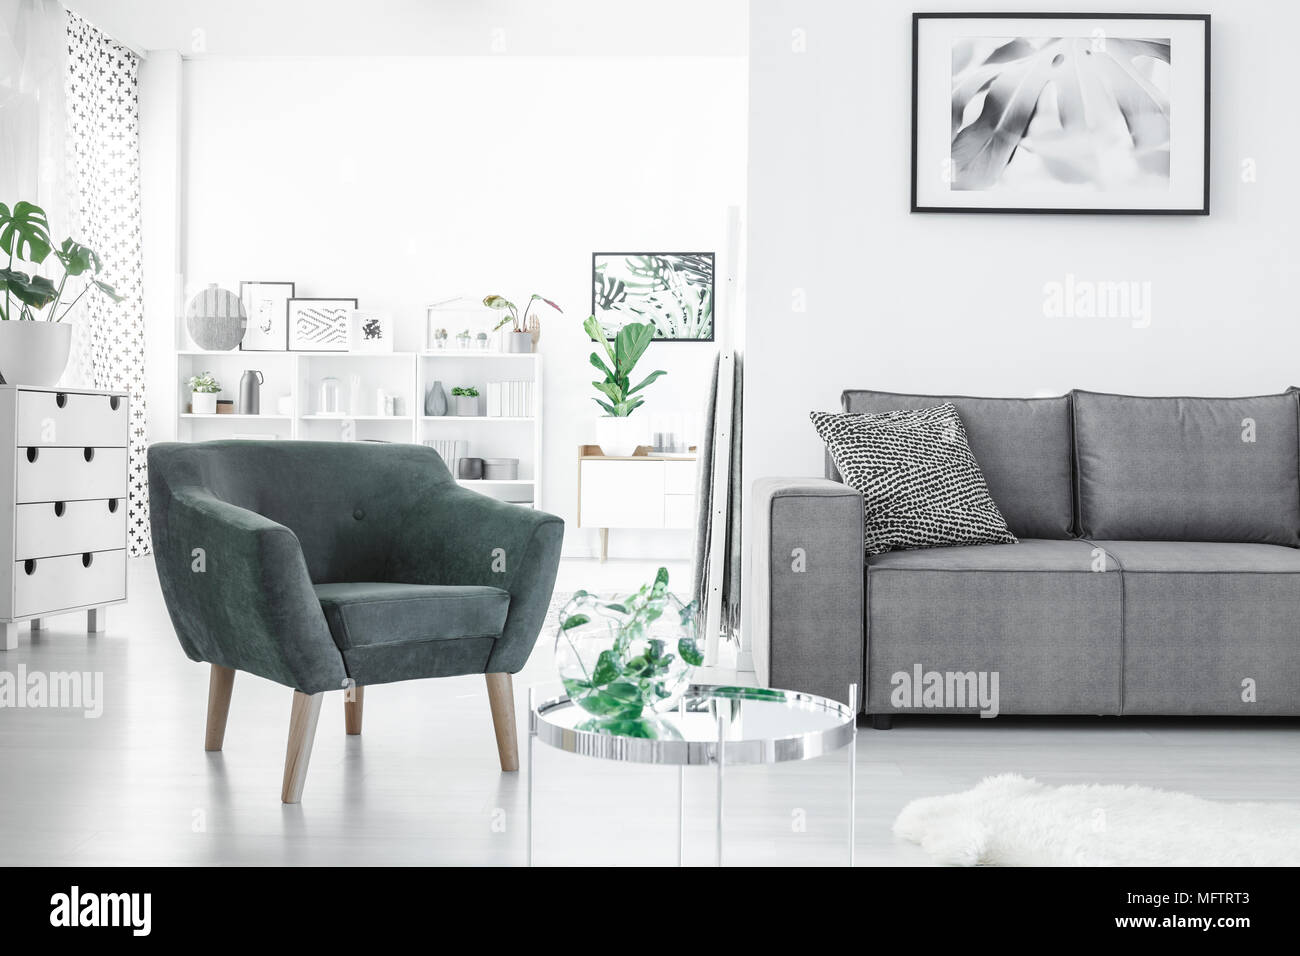 L'espace ouvert salon blanc intérieur avec des plantes fraîches, des affiches, de la table et fauteuil vert gris Banque D'Images